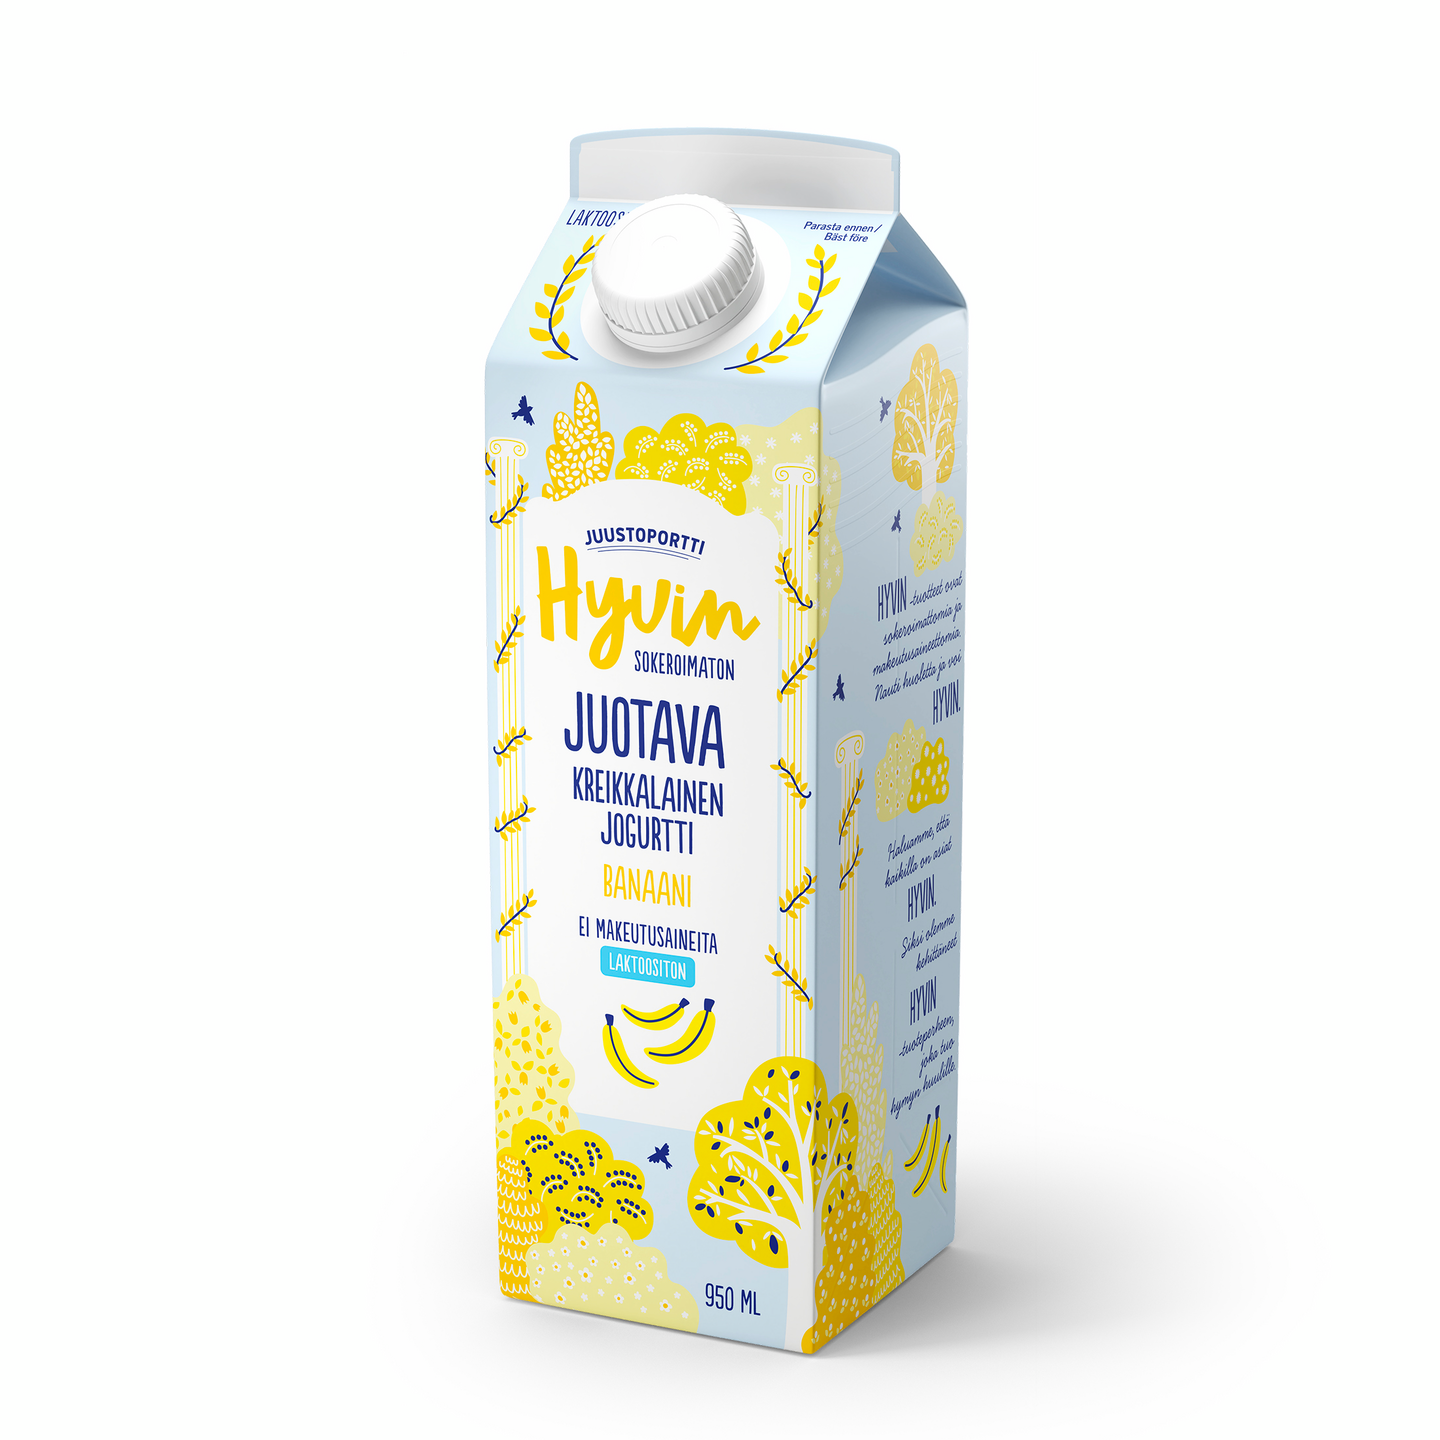 Juustoportti Hyvin sokeroimaton kreikkalainen juotava jogurtti 950ml banaani laktoositon